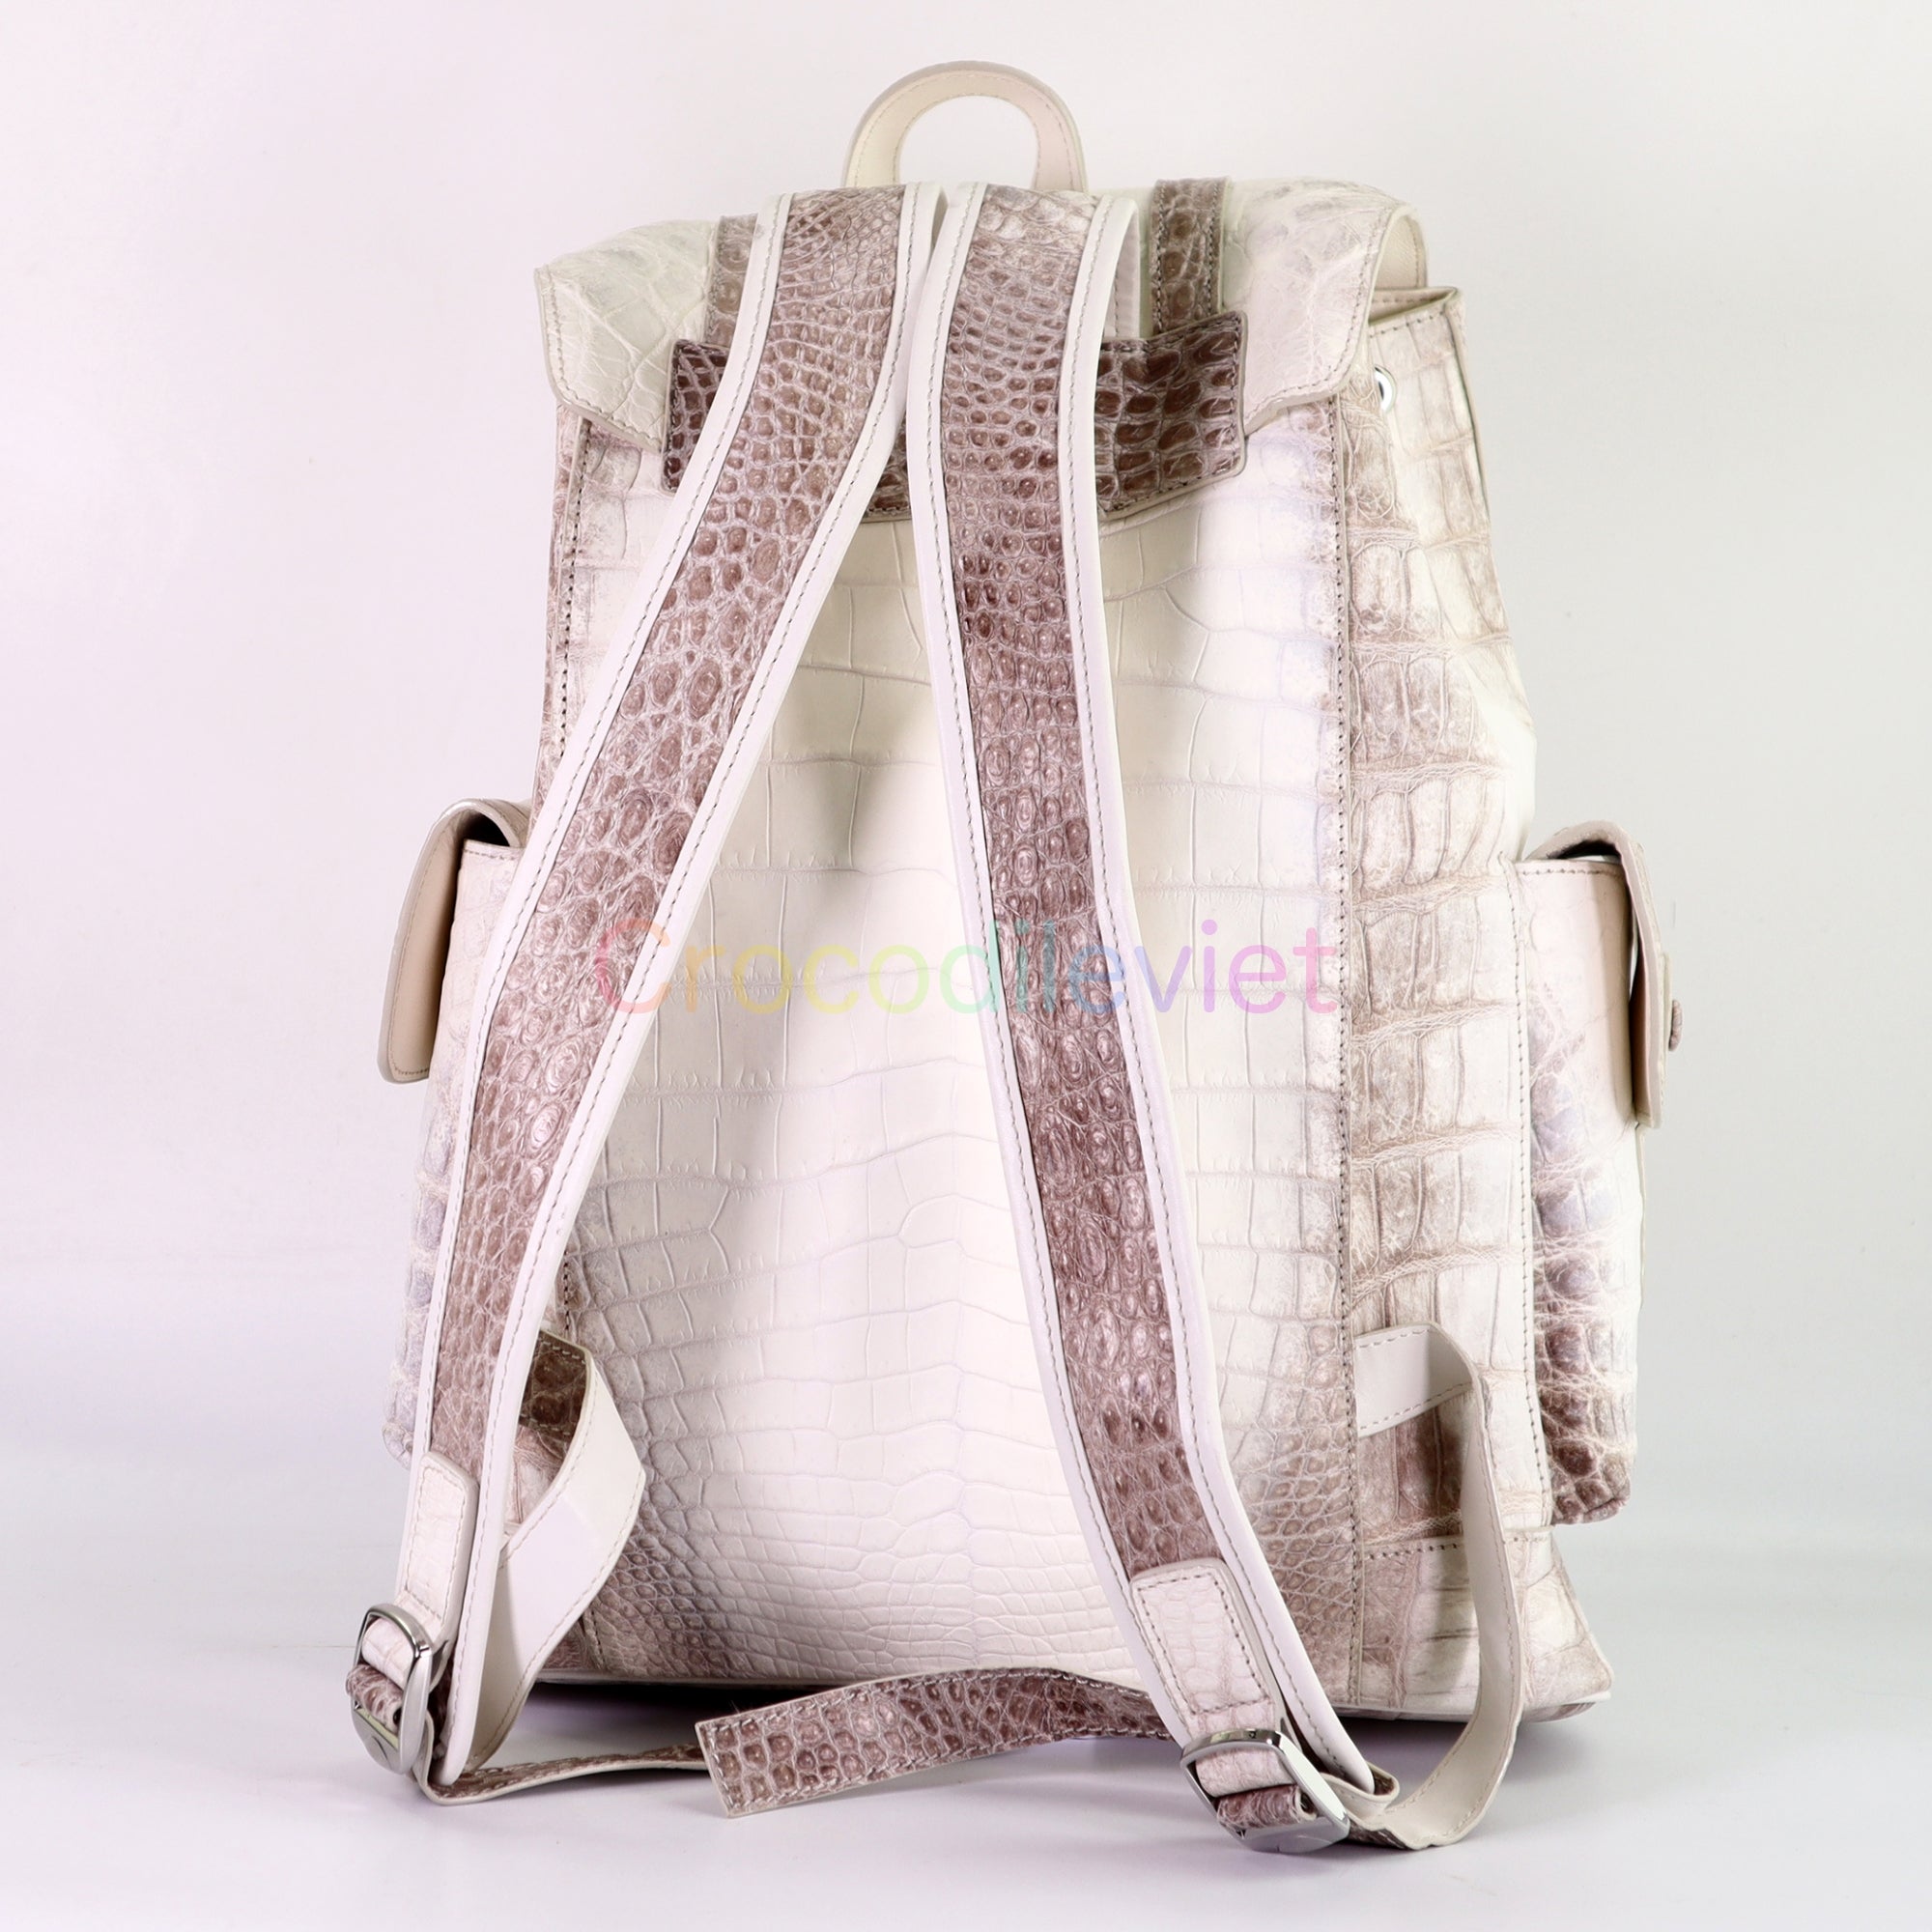 Himalayan genuine crocodile Leather waist Bag/body bag/ travel bag